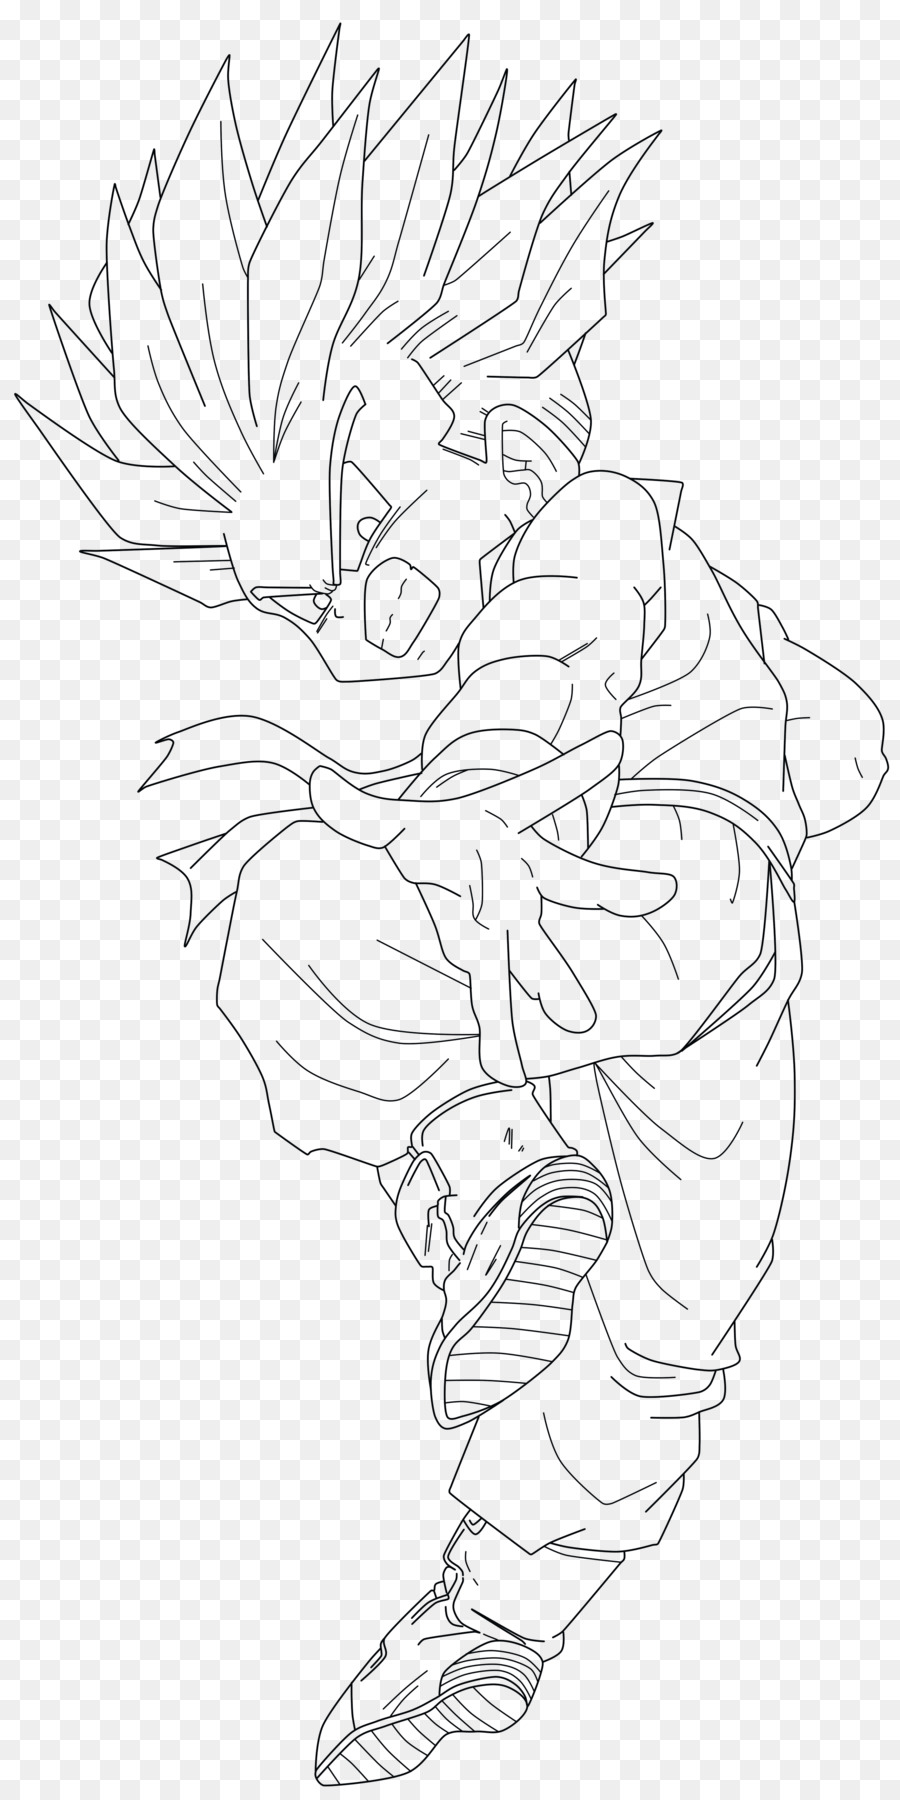 Trunks Line art Drawing Goku Super Saiya - Lineart Vector png download - 2500*5000 - Free Transparent Trunks png Download.